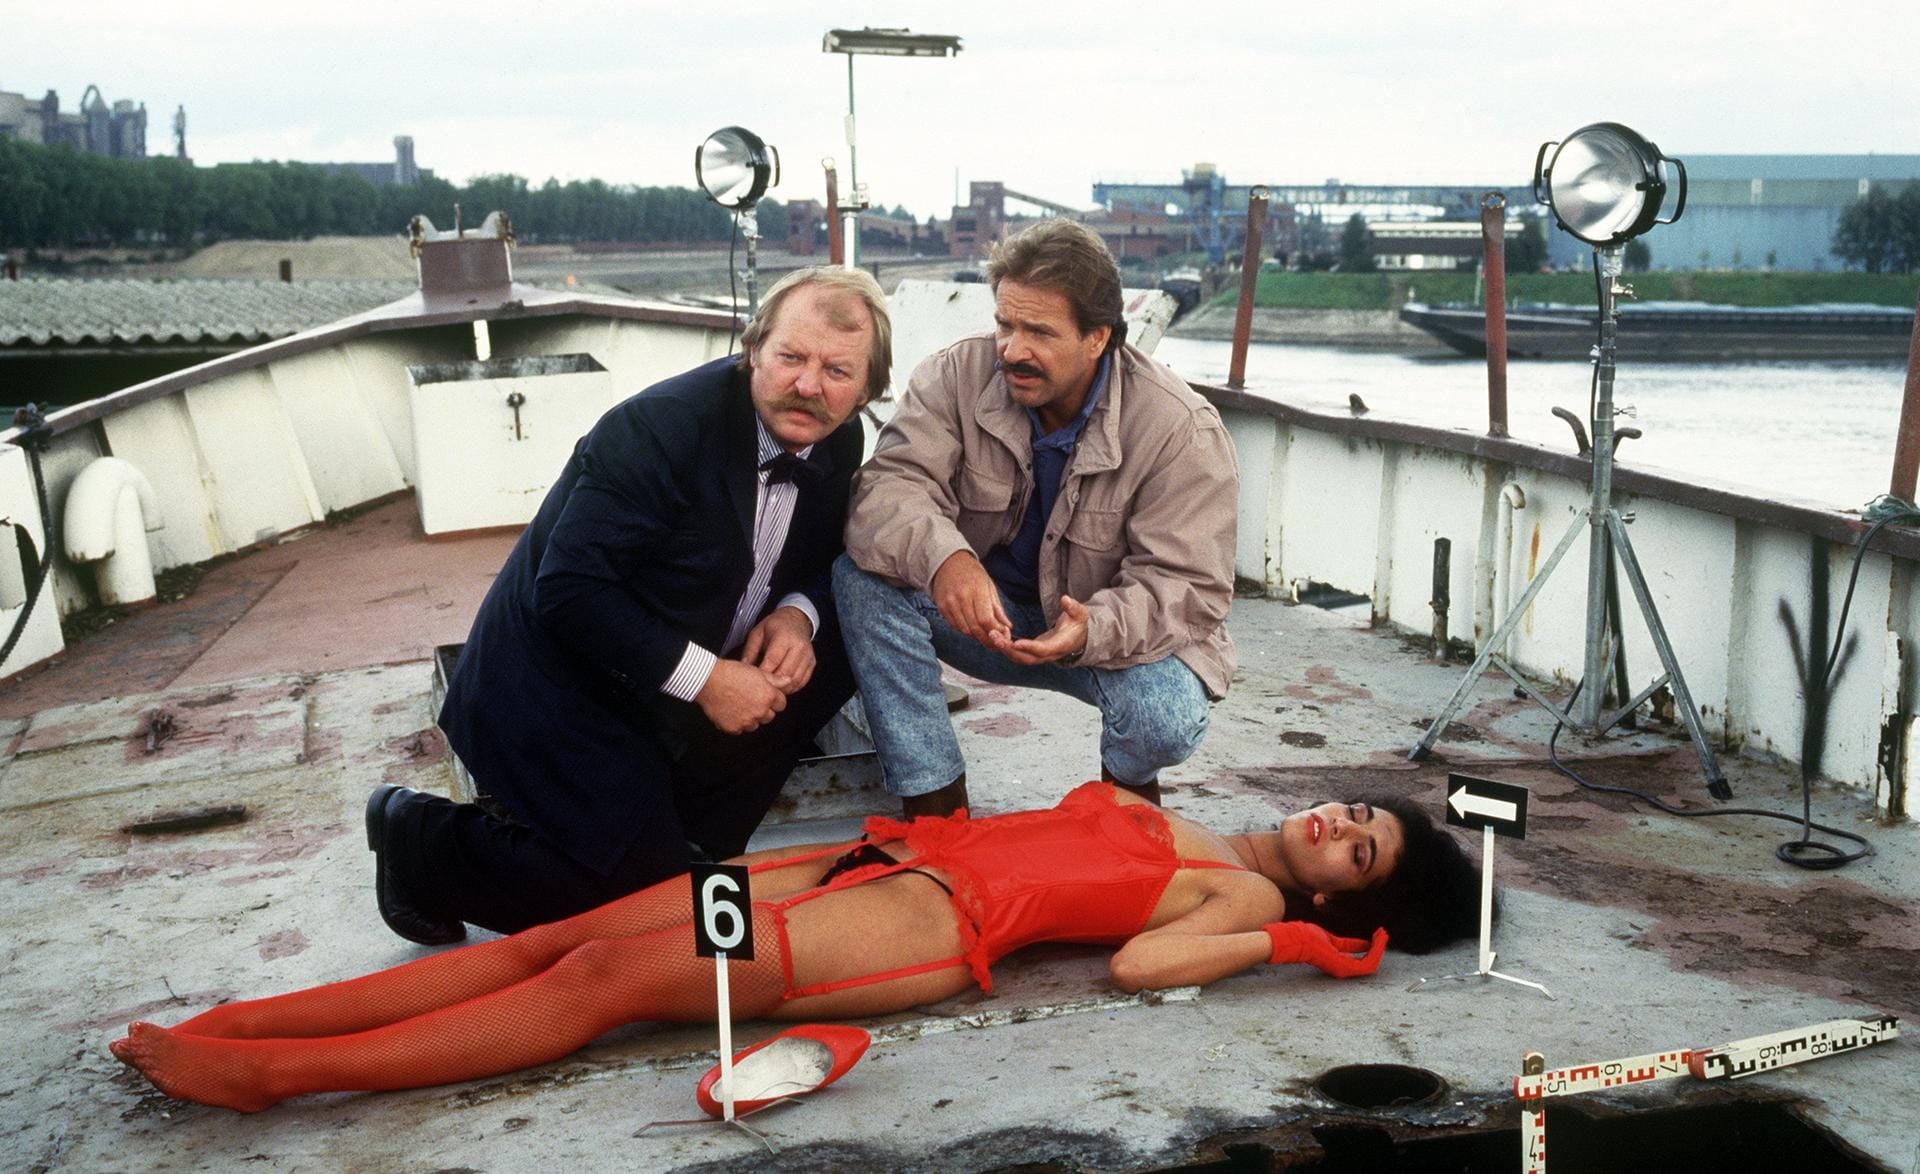 Legendär ist George wegen seiner Rolle als ruppiger "Tatort"-Kommissar Horst Schimanski (Foto). In 27 der TV-Krimis ermittelte er zusammen mit dem 1994 verstorbenen Eberhard Feik alias "Thanner". 1997 widmete das Erste "Schimanski" unter gleichlautendem Titel eine eigene Reihe.